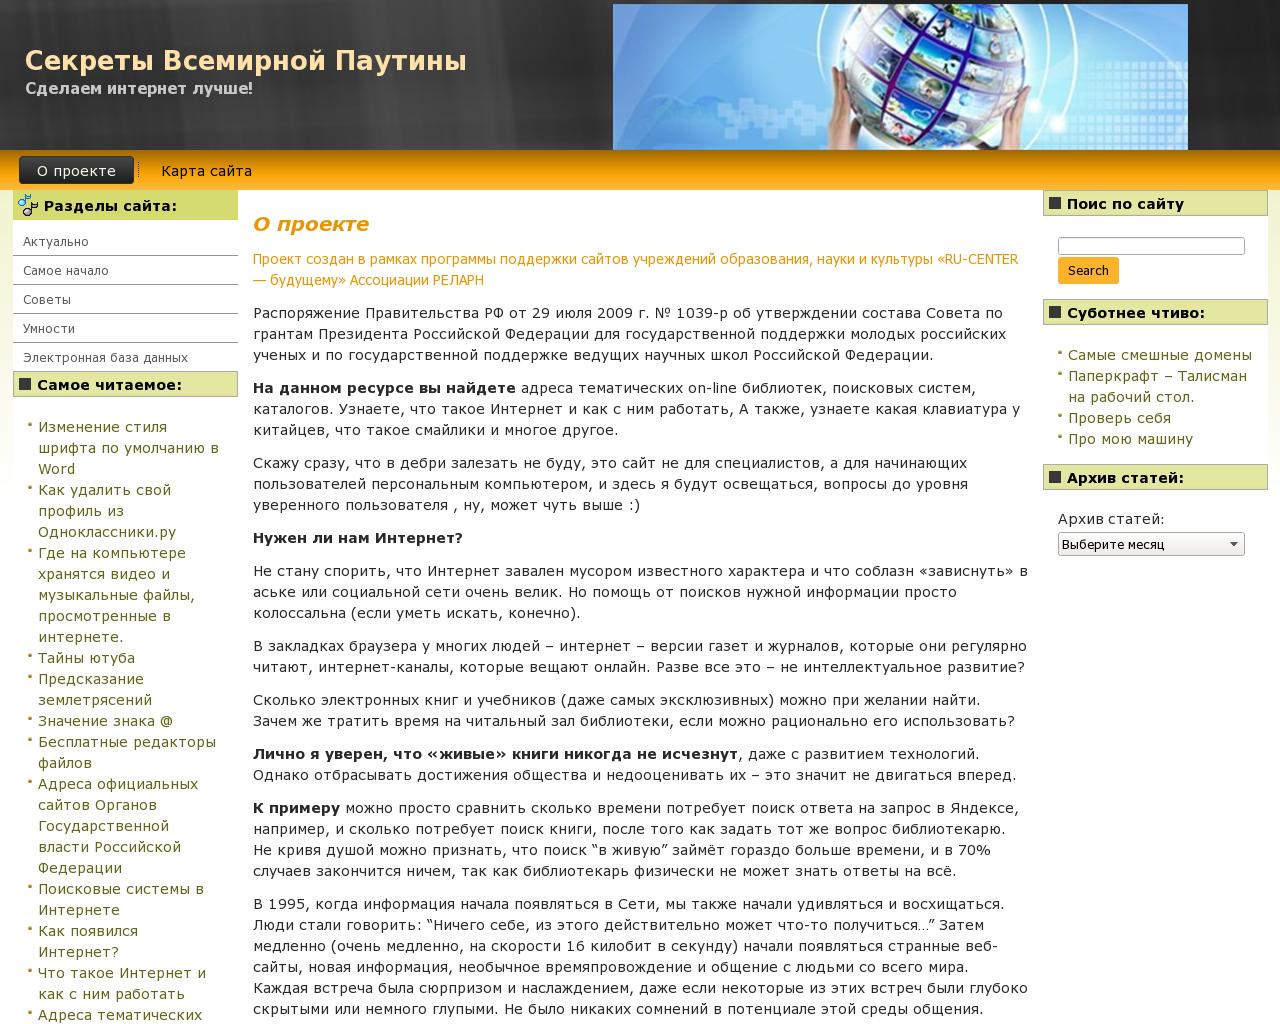 Изображение сайта networkmy.ru в разрешении 1280x1024